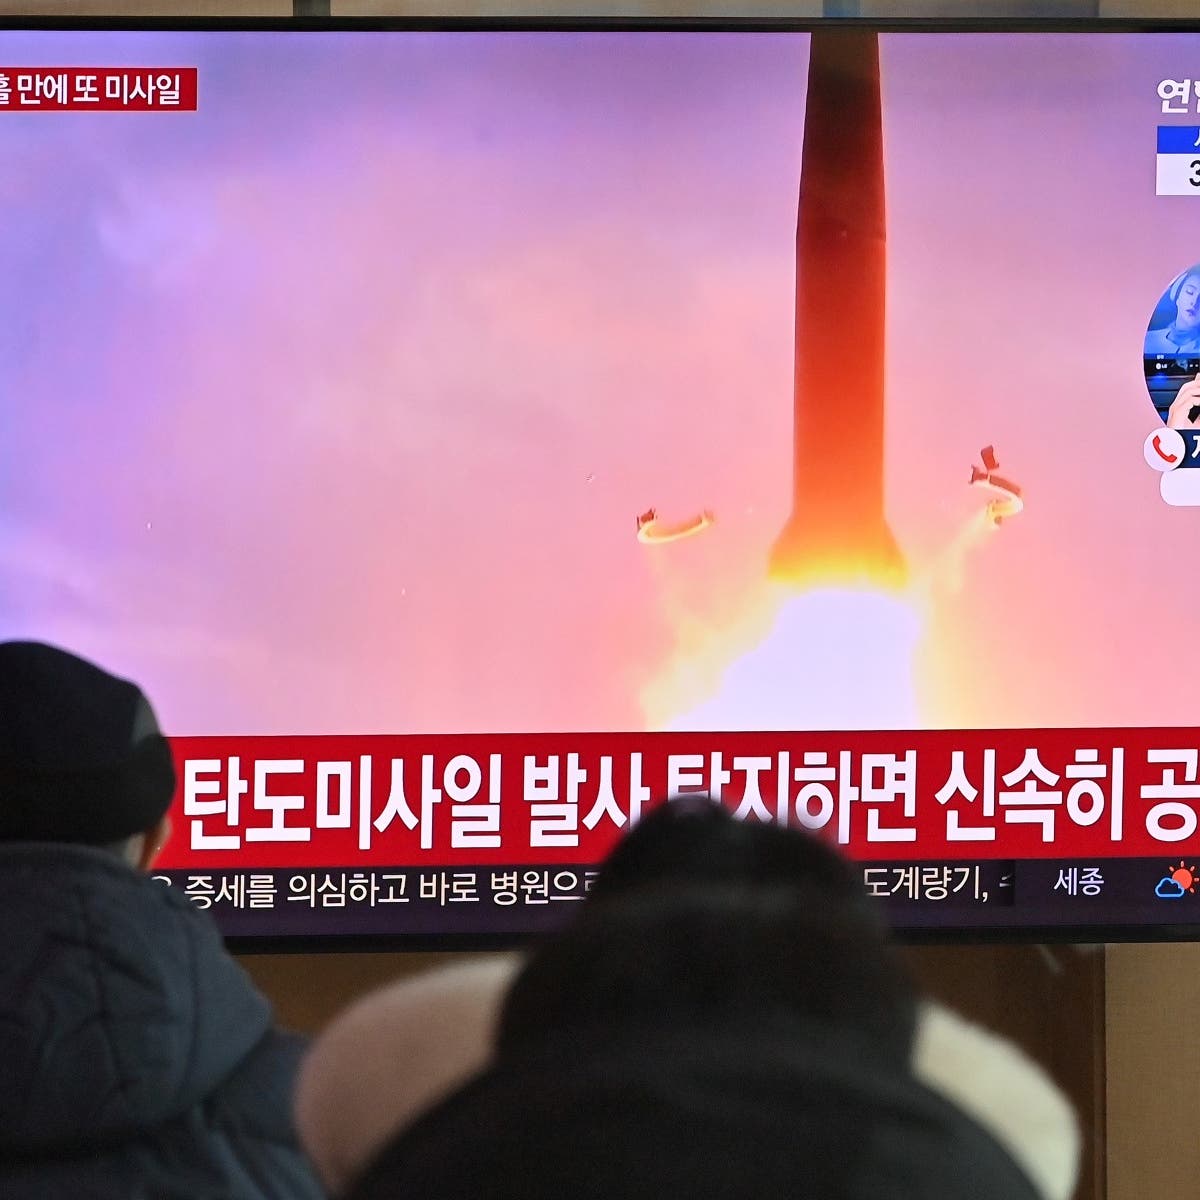 اليابان: كوريا الشمالية أطلقت نوعاً جديداً من الصواريخ الباليستية                